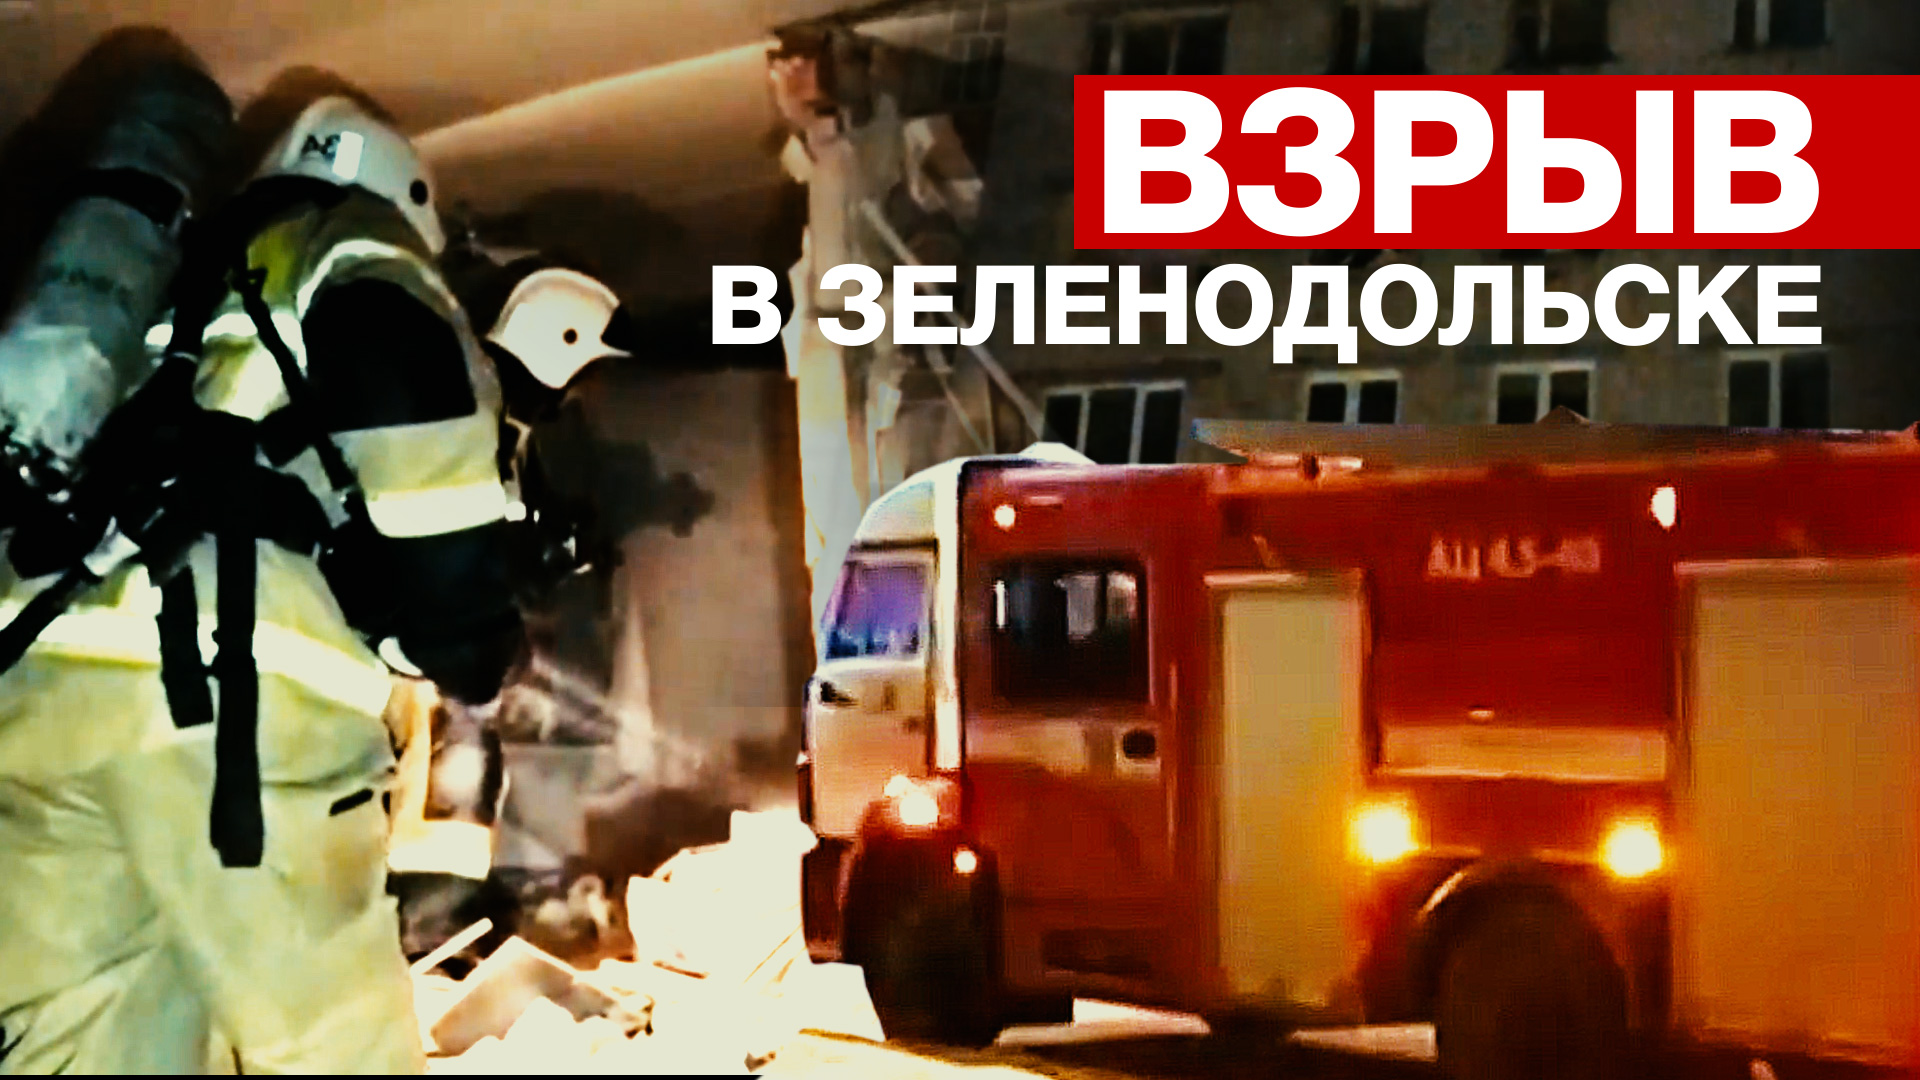 Последствия взрыва бытового газа в жилом доме в Зеленодольске — видео